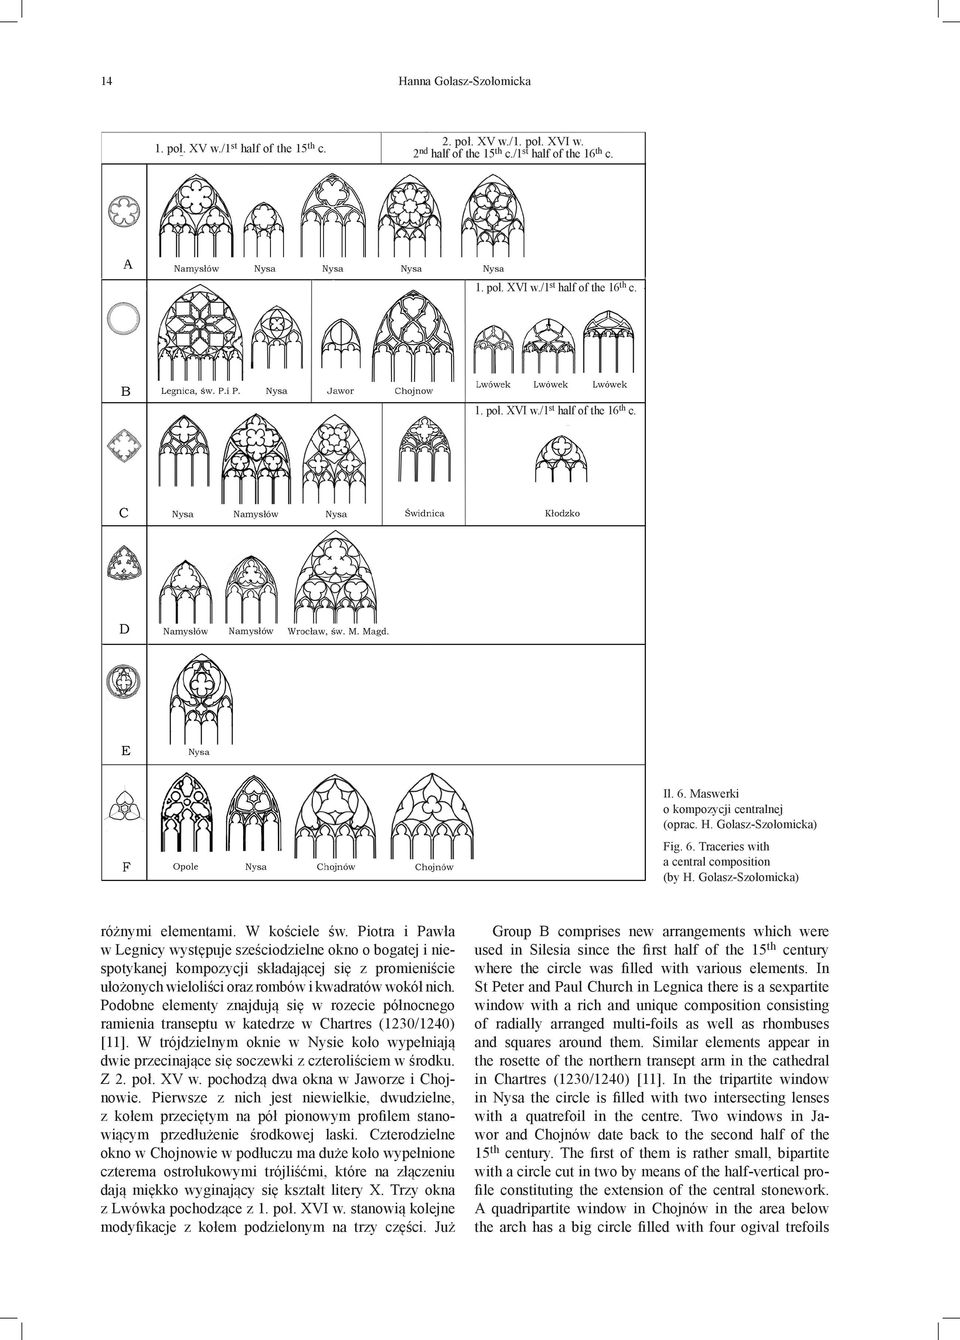 Piotra i Pawła w Leg nicy występuje sześciodzielne okno o bogatej i niespo tykanej kompozycji składającej się z promieniście ułożonych wieloliści oraz rombów i kwadratów wokół nich.